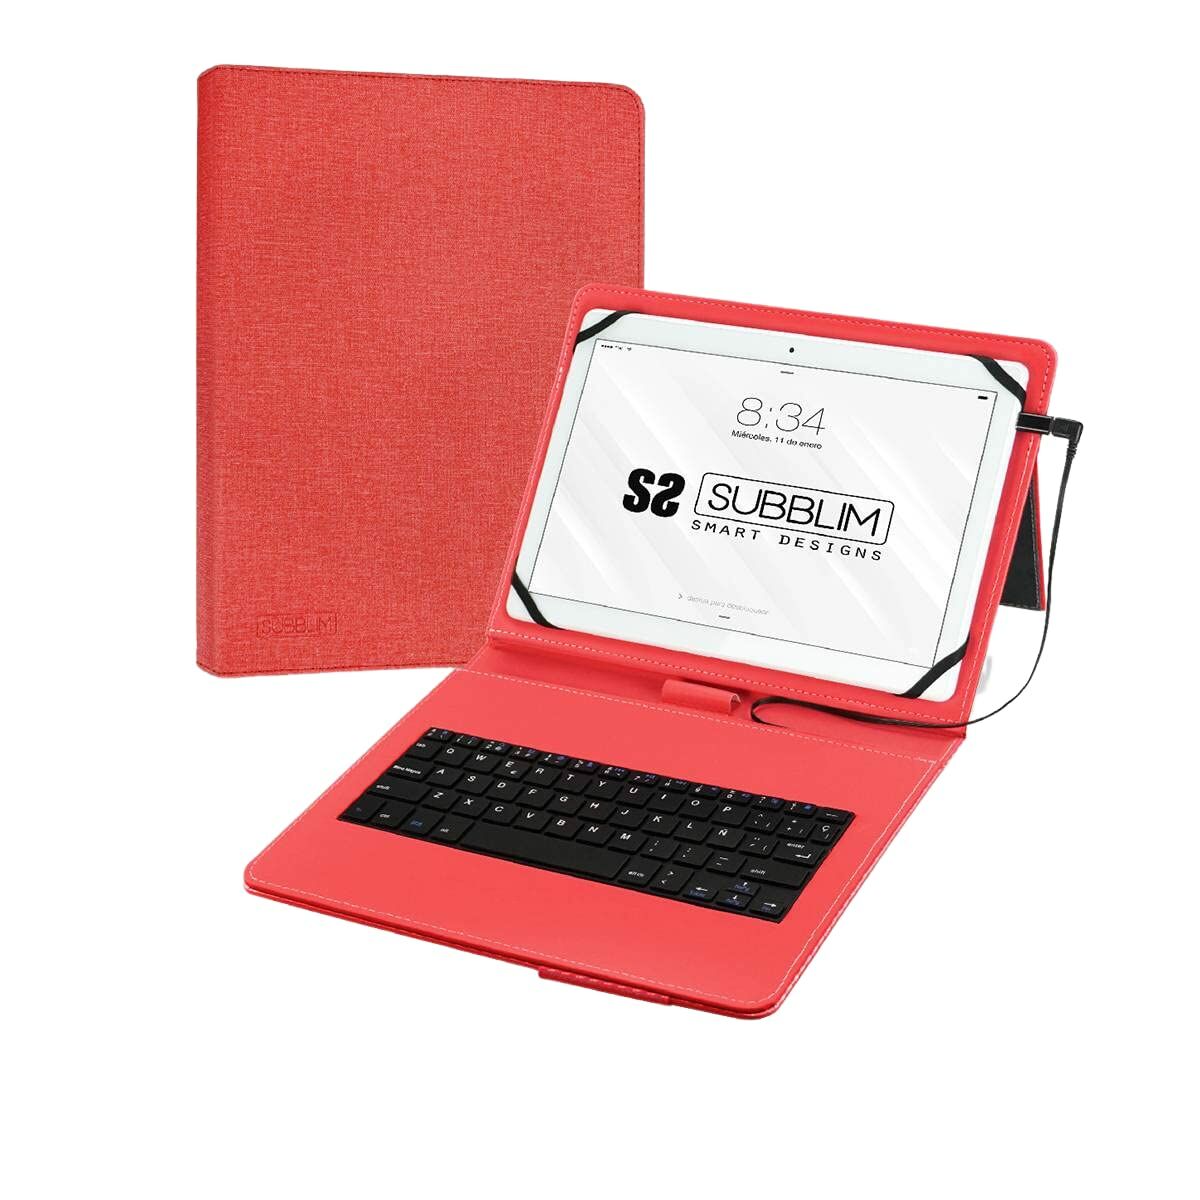 Hülle für Tablet und Tastatur Subblim SUB-KT1-USB002 10.1" Rot Qwerty Spanisch Spanisch